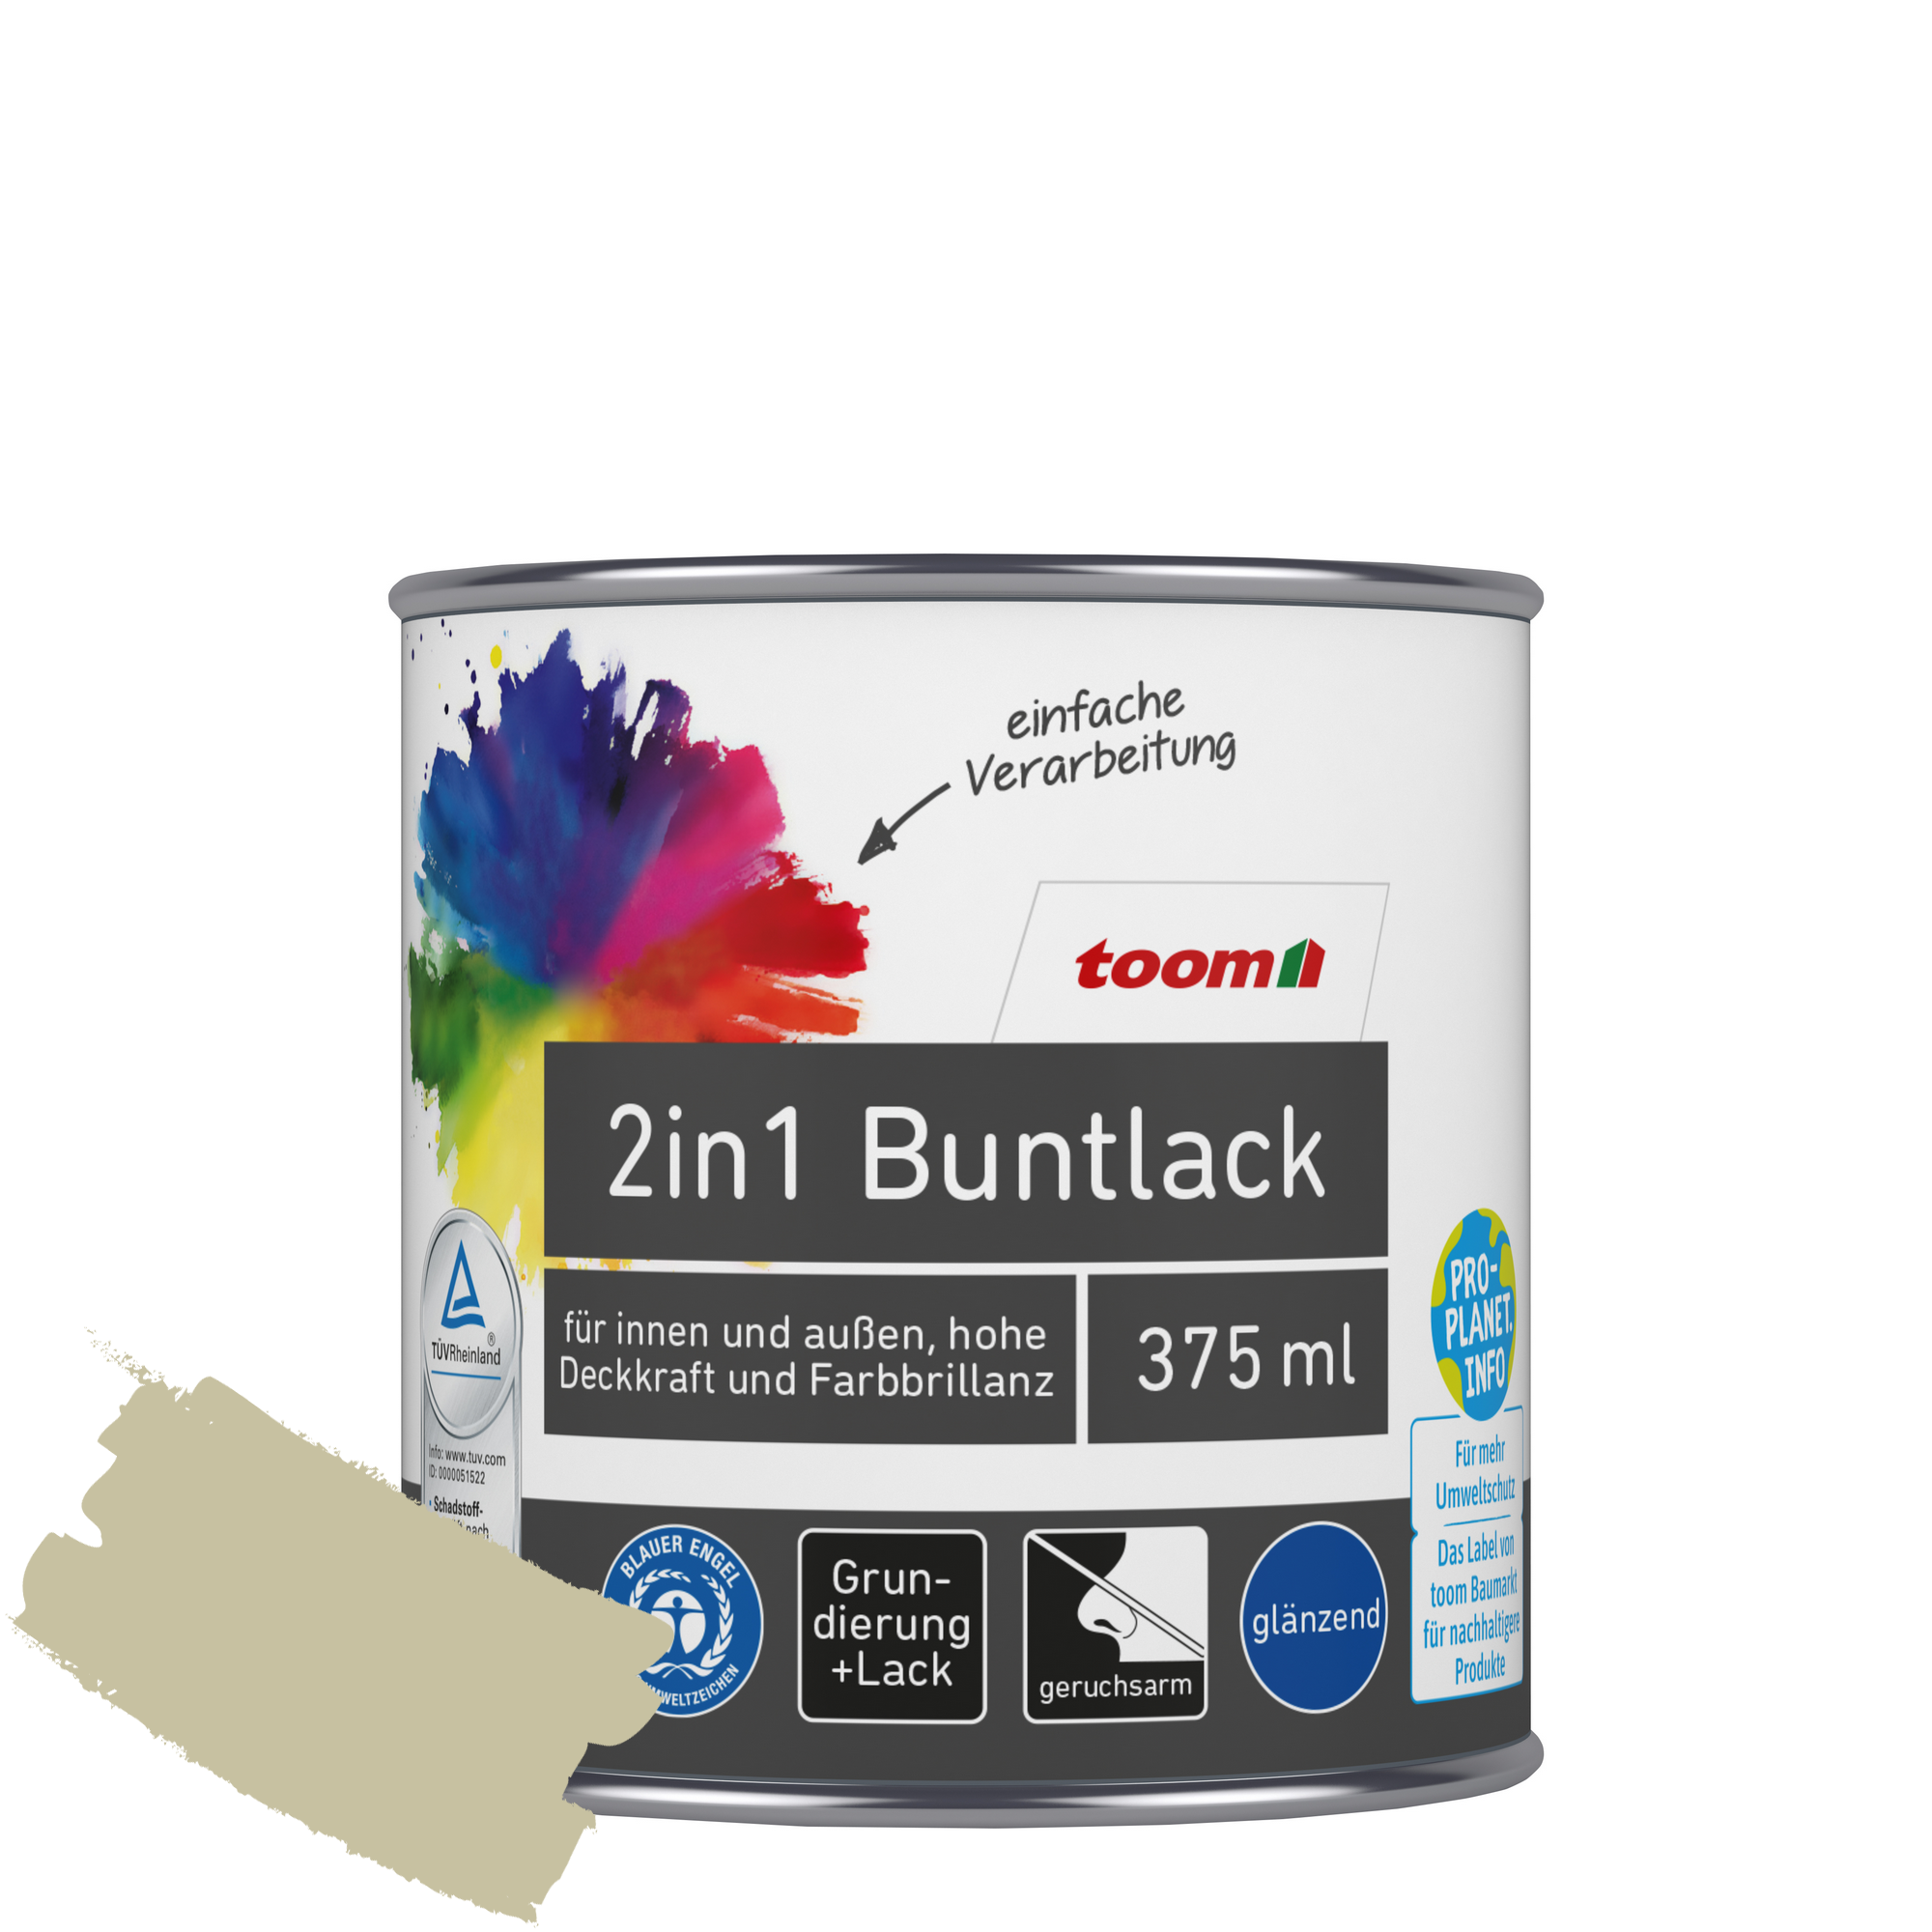 2in1 Buntlack 'Salbeiduft' zartgrün glänzend 375 ml + product picture